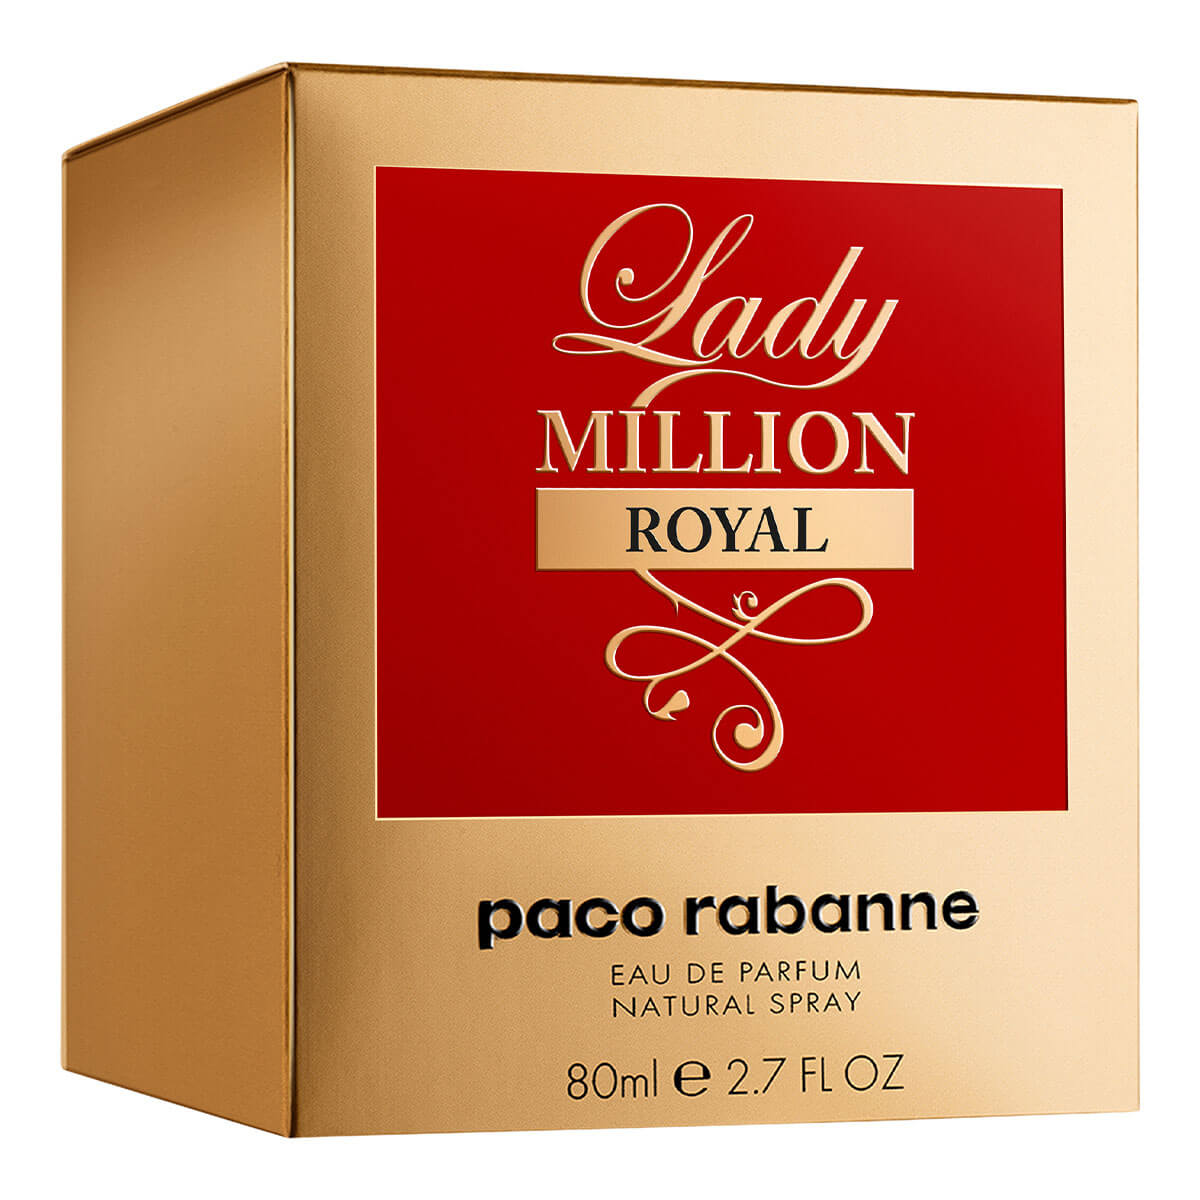 LADY MILLION ROYAL EAU DE PARFUM PARA MUJER